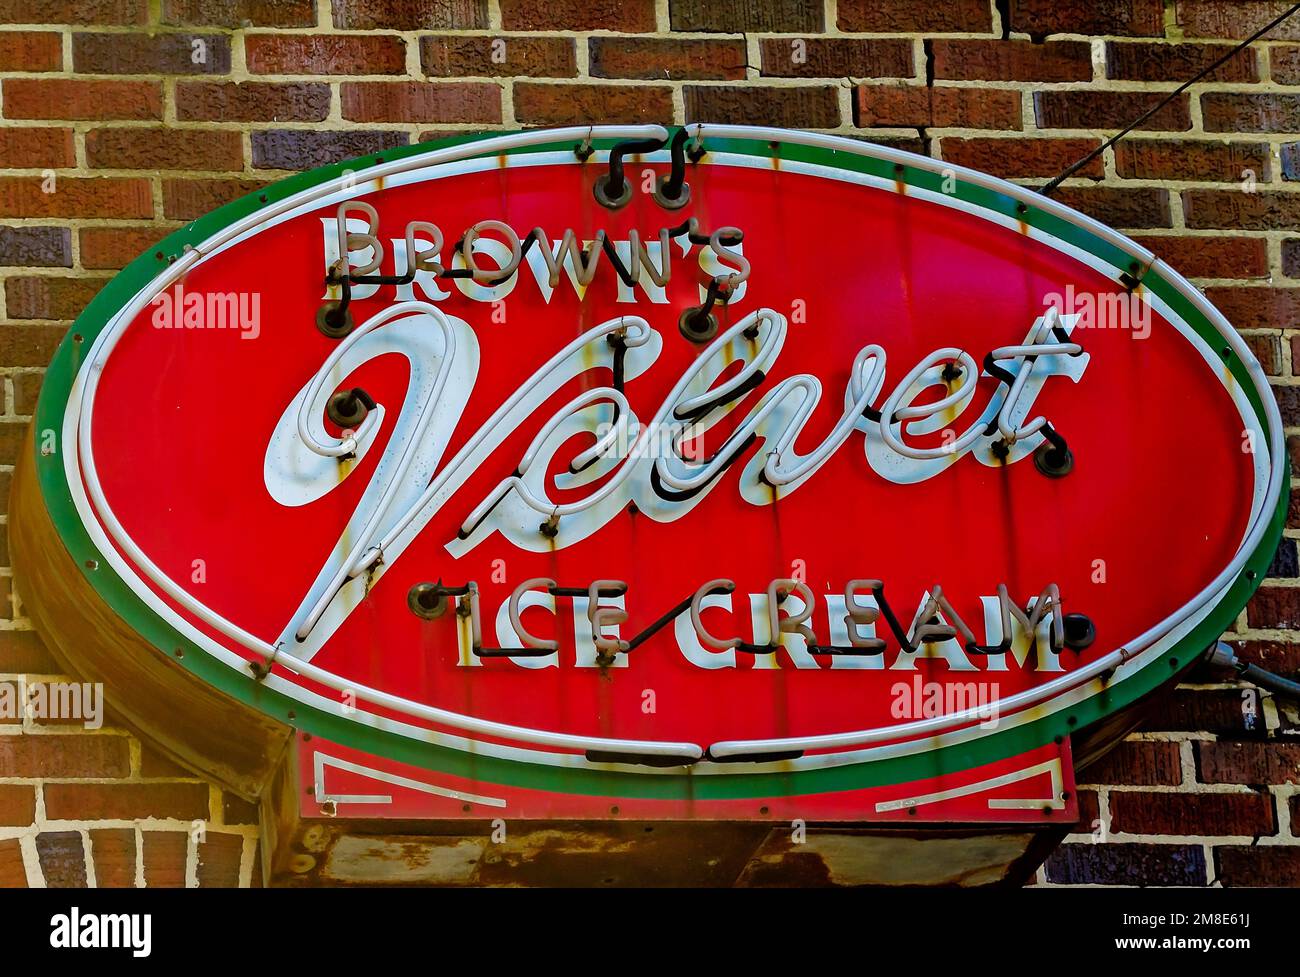 A neon sign advertising Brown’s Velvet Ice Cream hangs outside Lovelace Drugs, Dec. 28, 2022, in Ocean Springs, Mississippi. Stock Photo